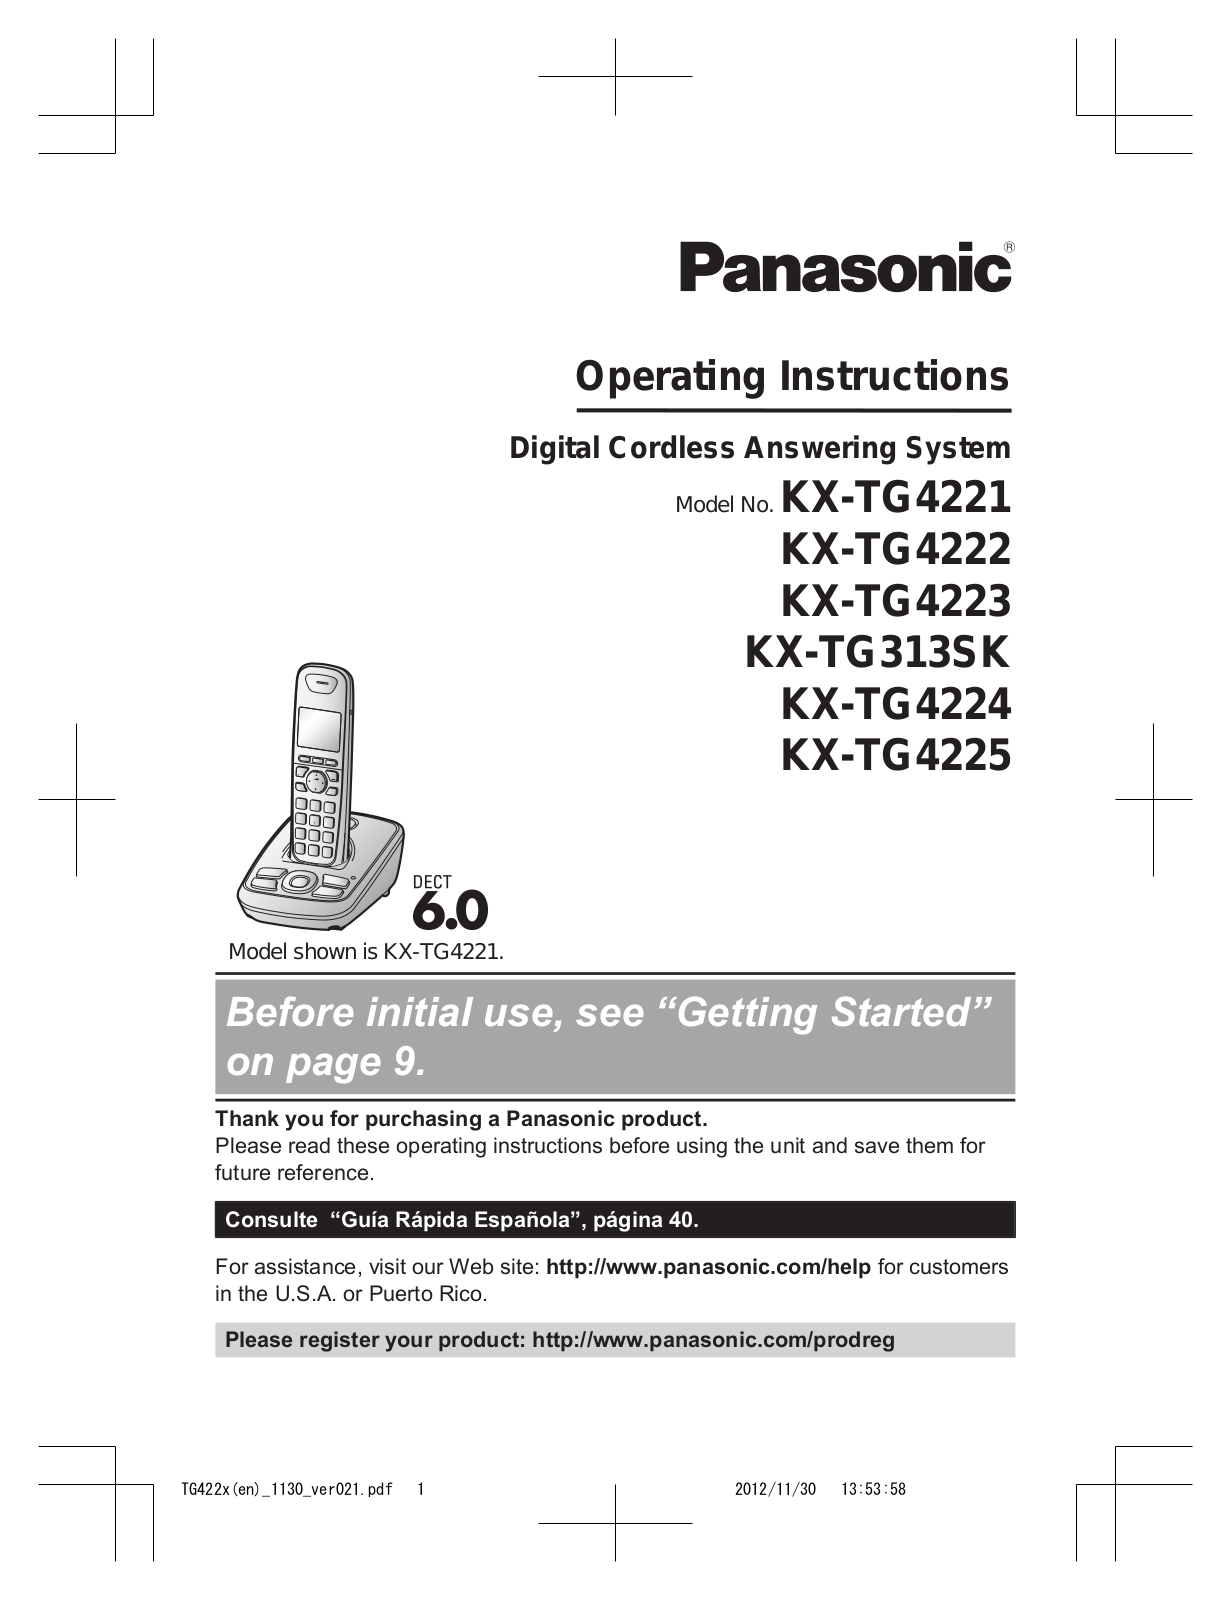 Panasonic KX-TG4222, KX-TG4225, KX-TG4223, KXTG4223N, KX-TG4221 User Manual